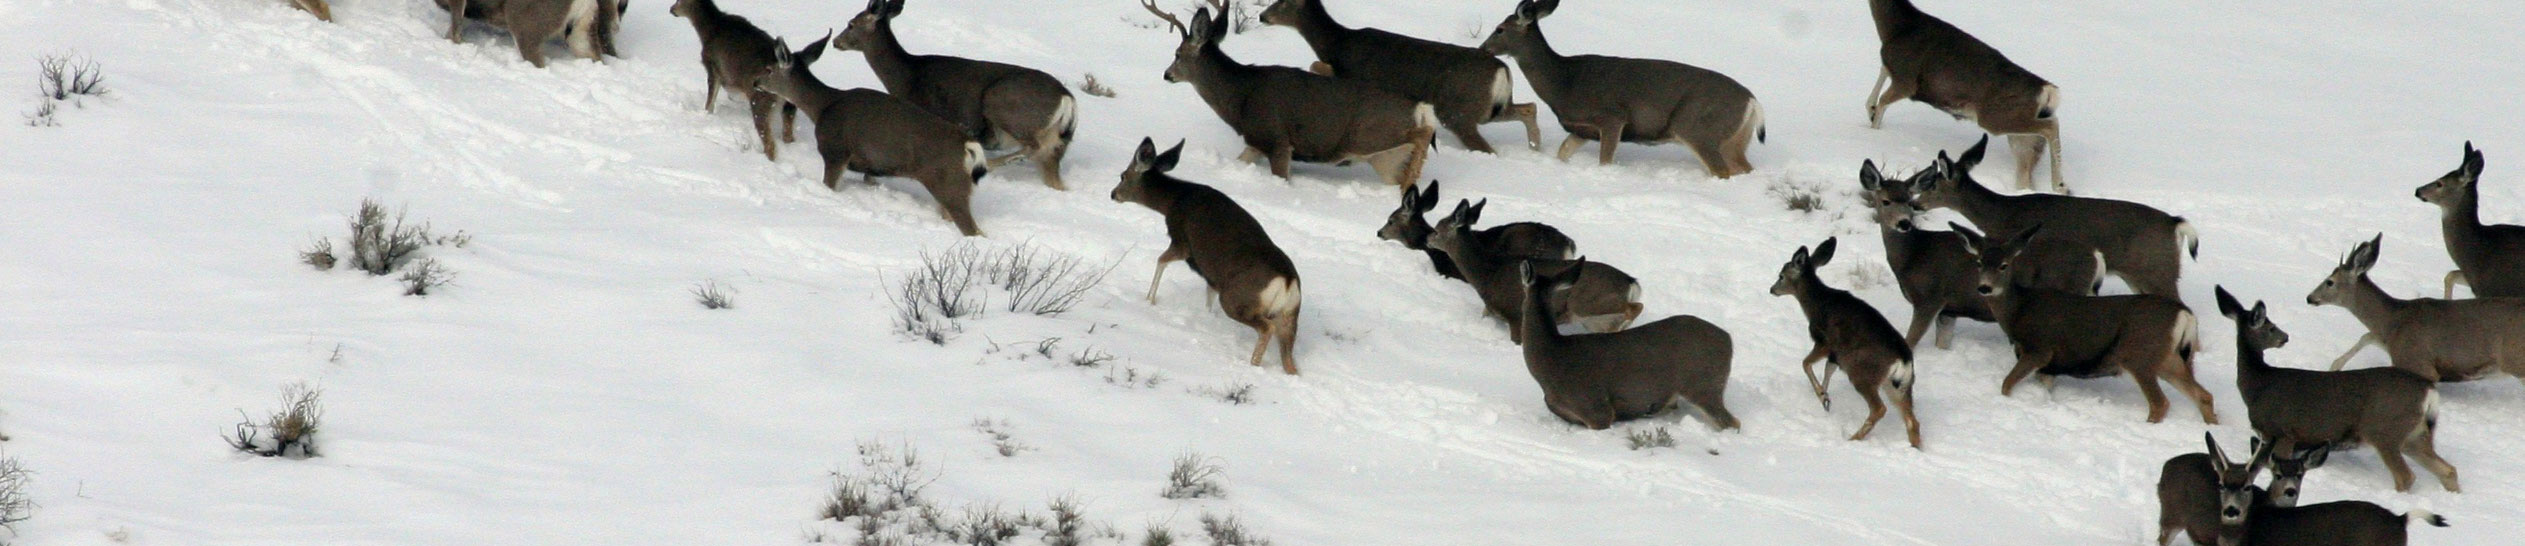 Image of mule deer in sagebursh